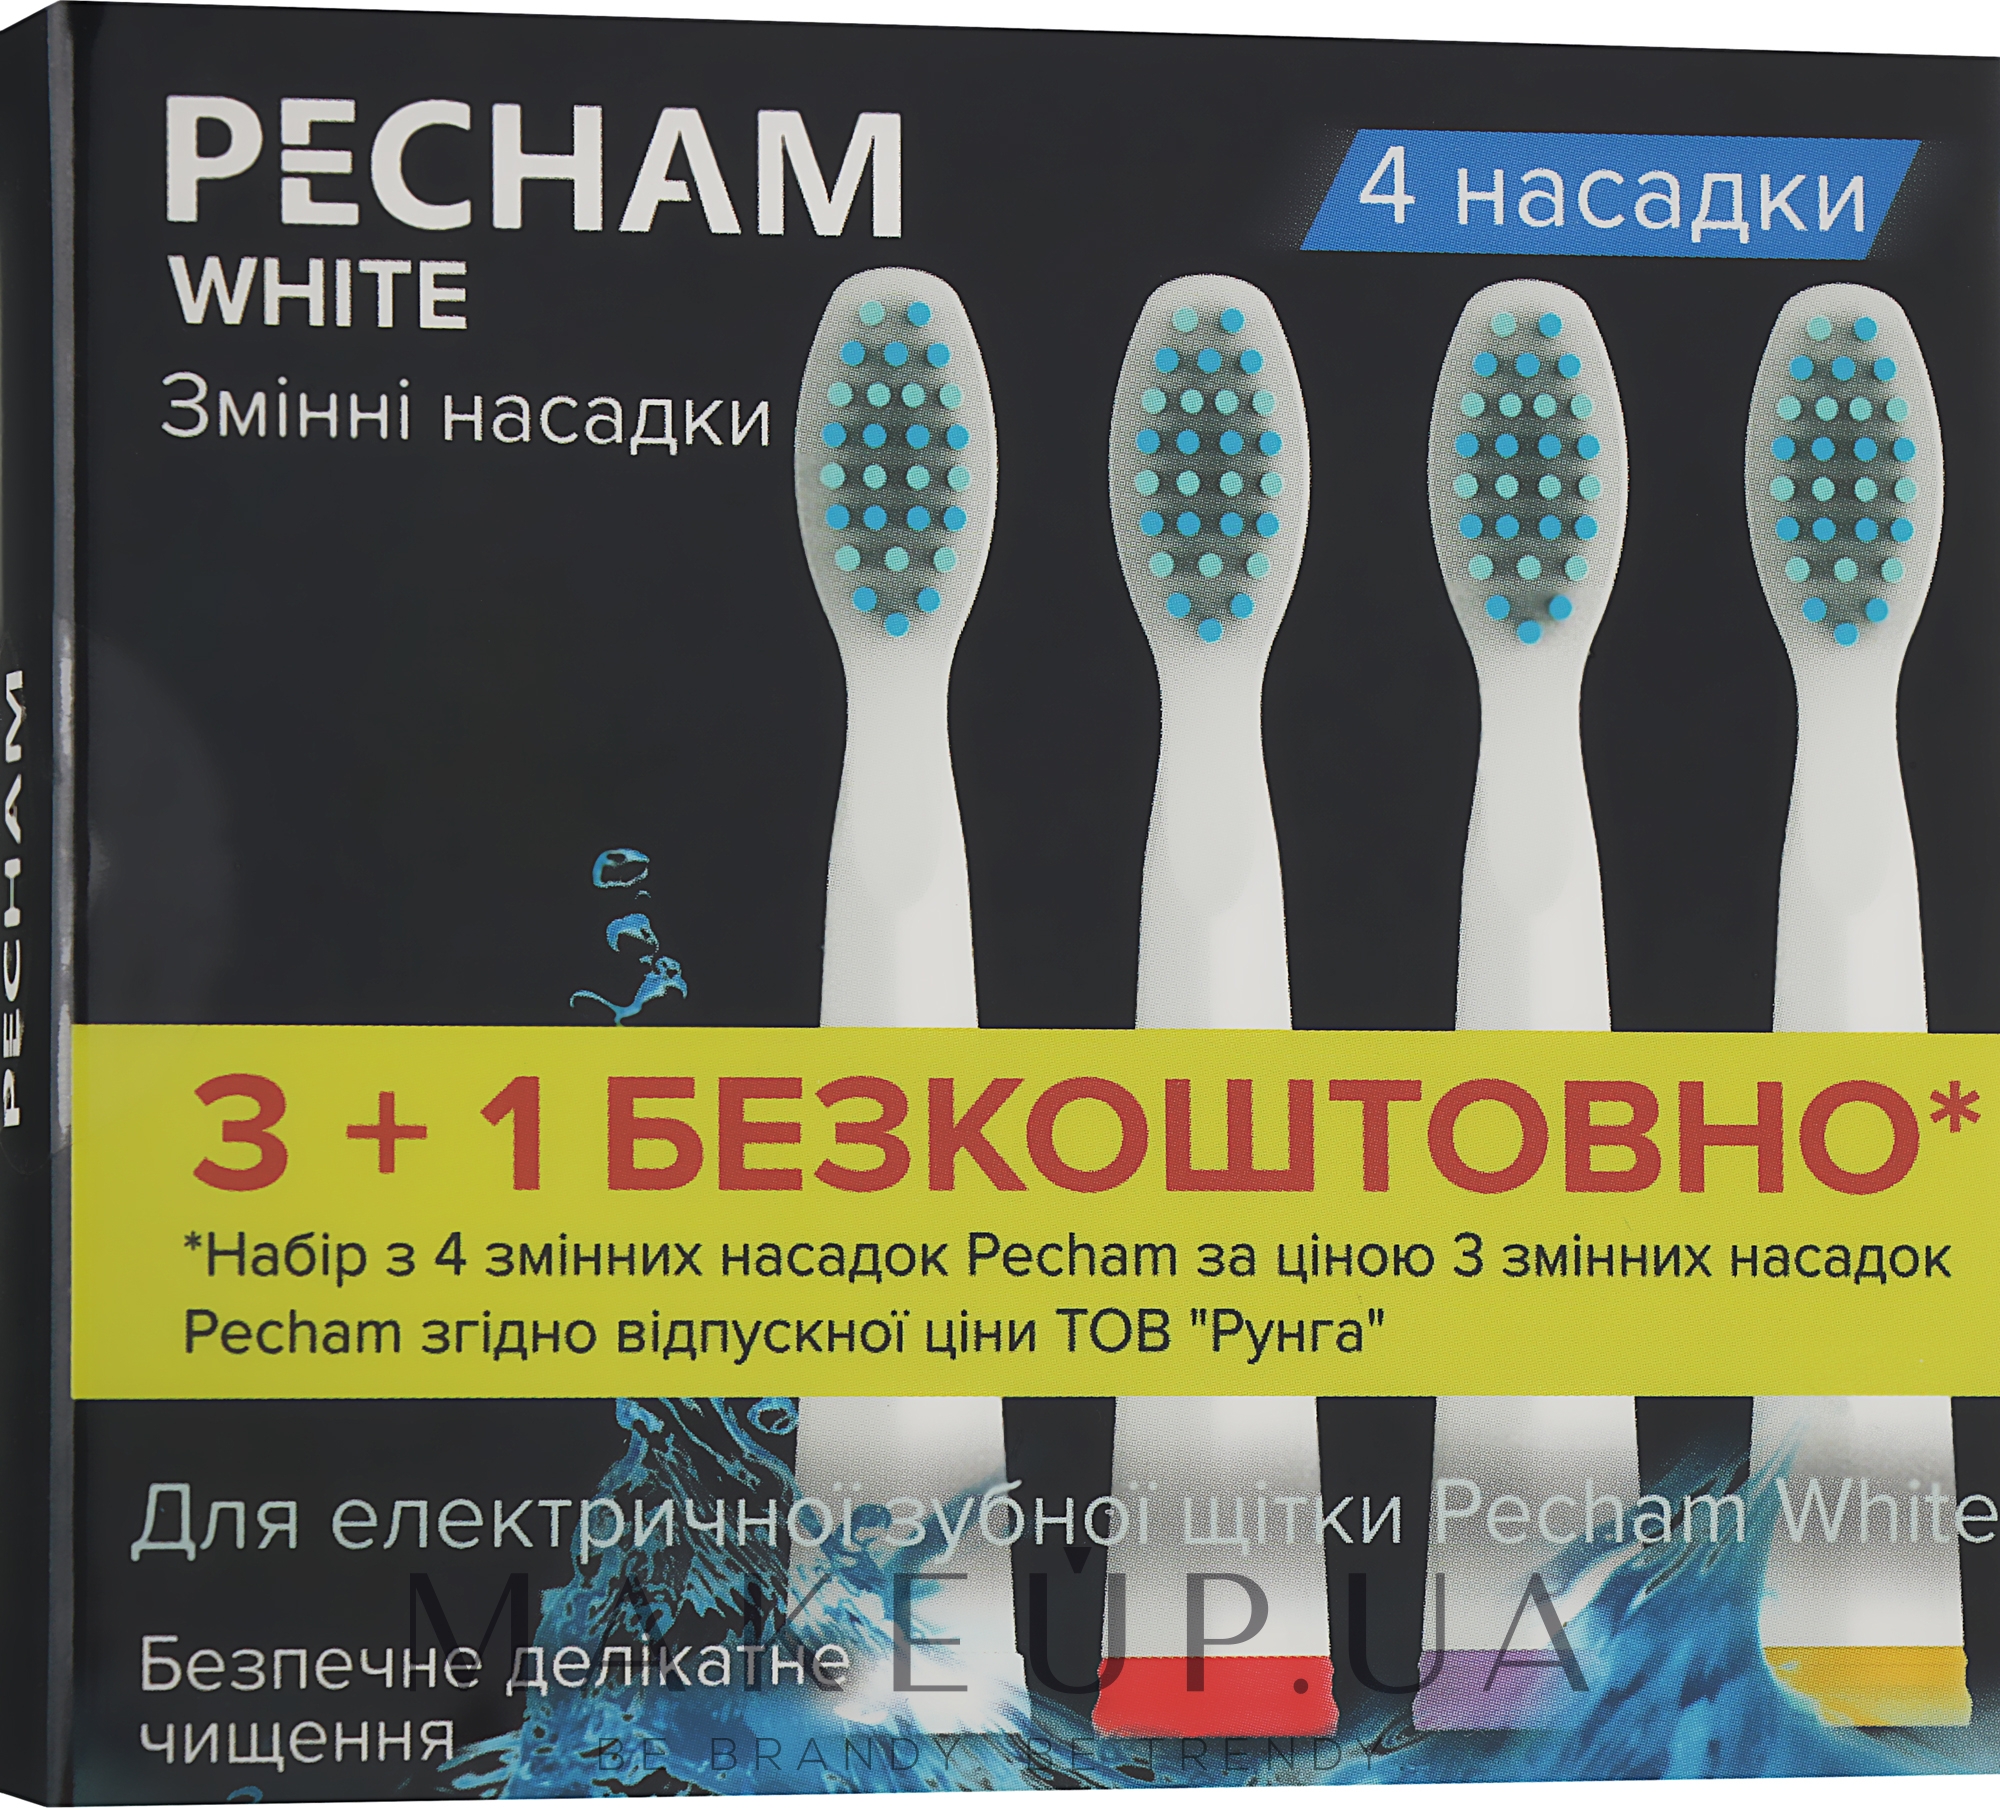 Насадки к электрической зубной щетке - Pecham Travel White — фото 4шт